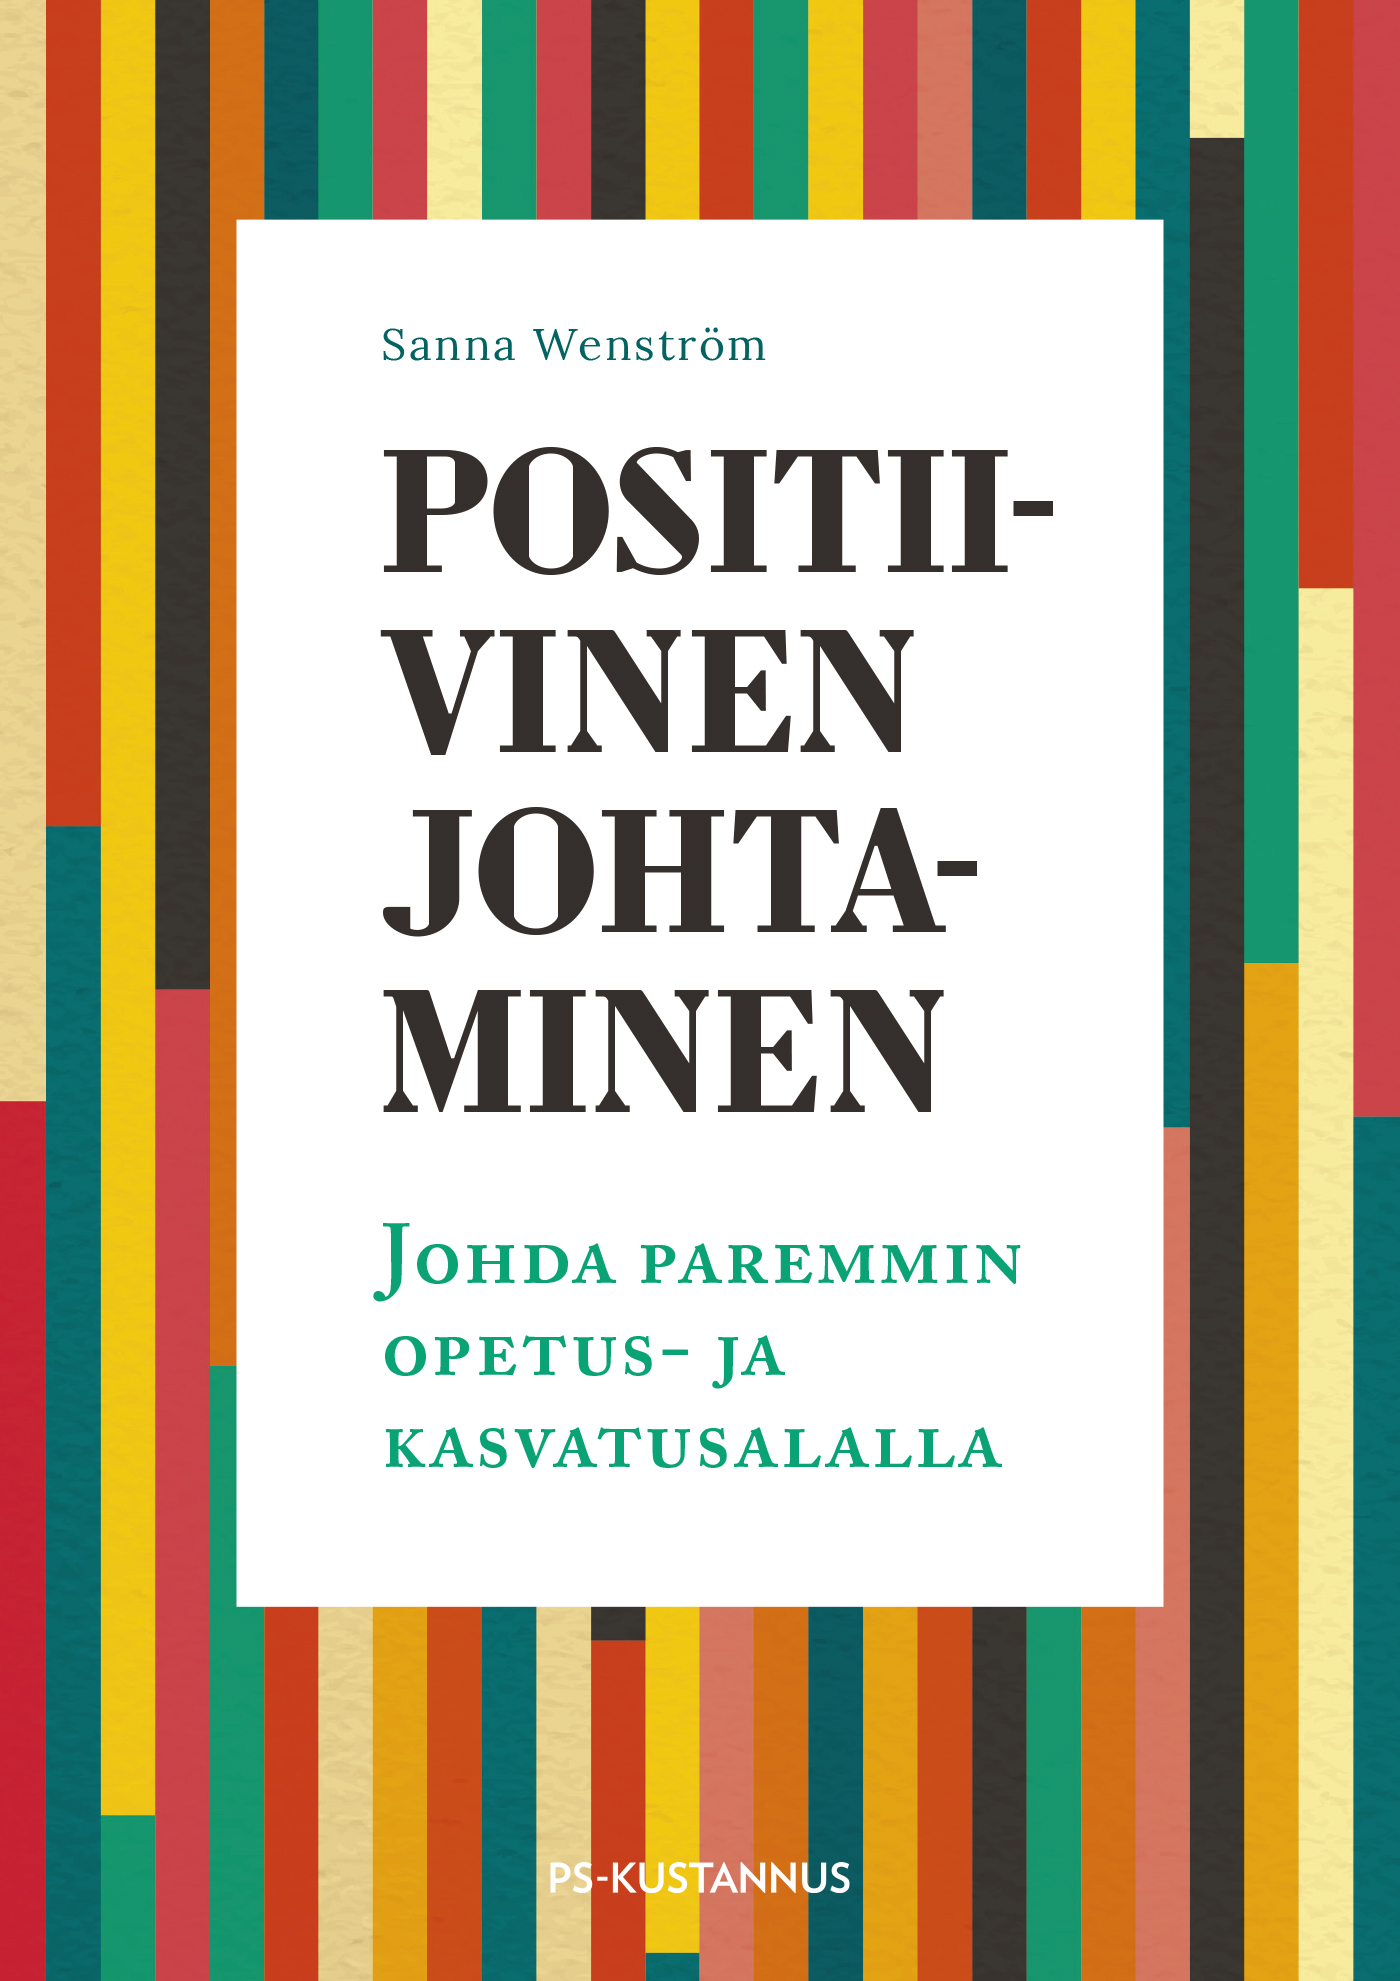 Wenström, Sanna - Positiivinen johtaminen: Johda paremmin opetus- ja kasvatusalalla, ebook